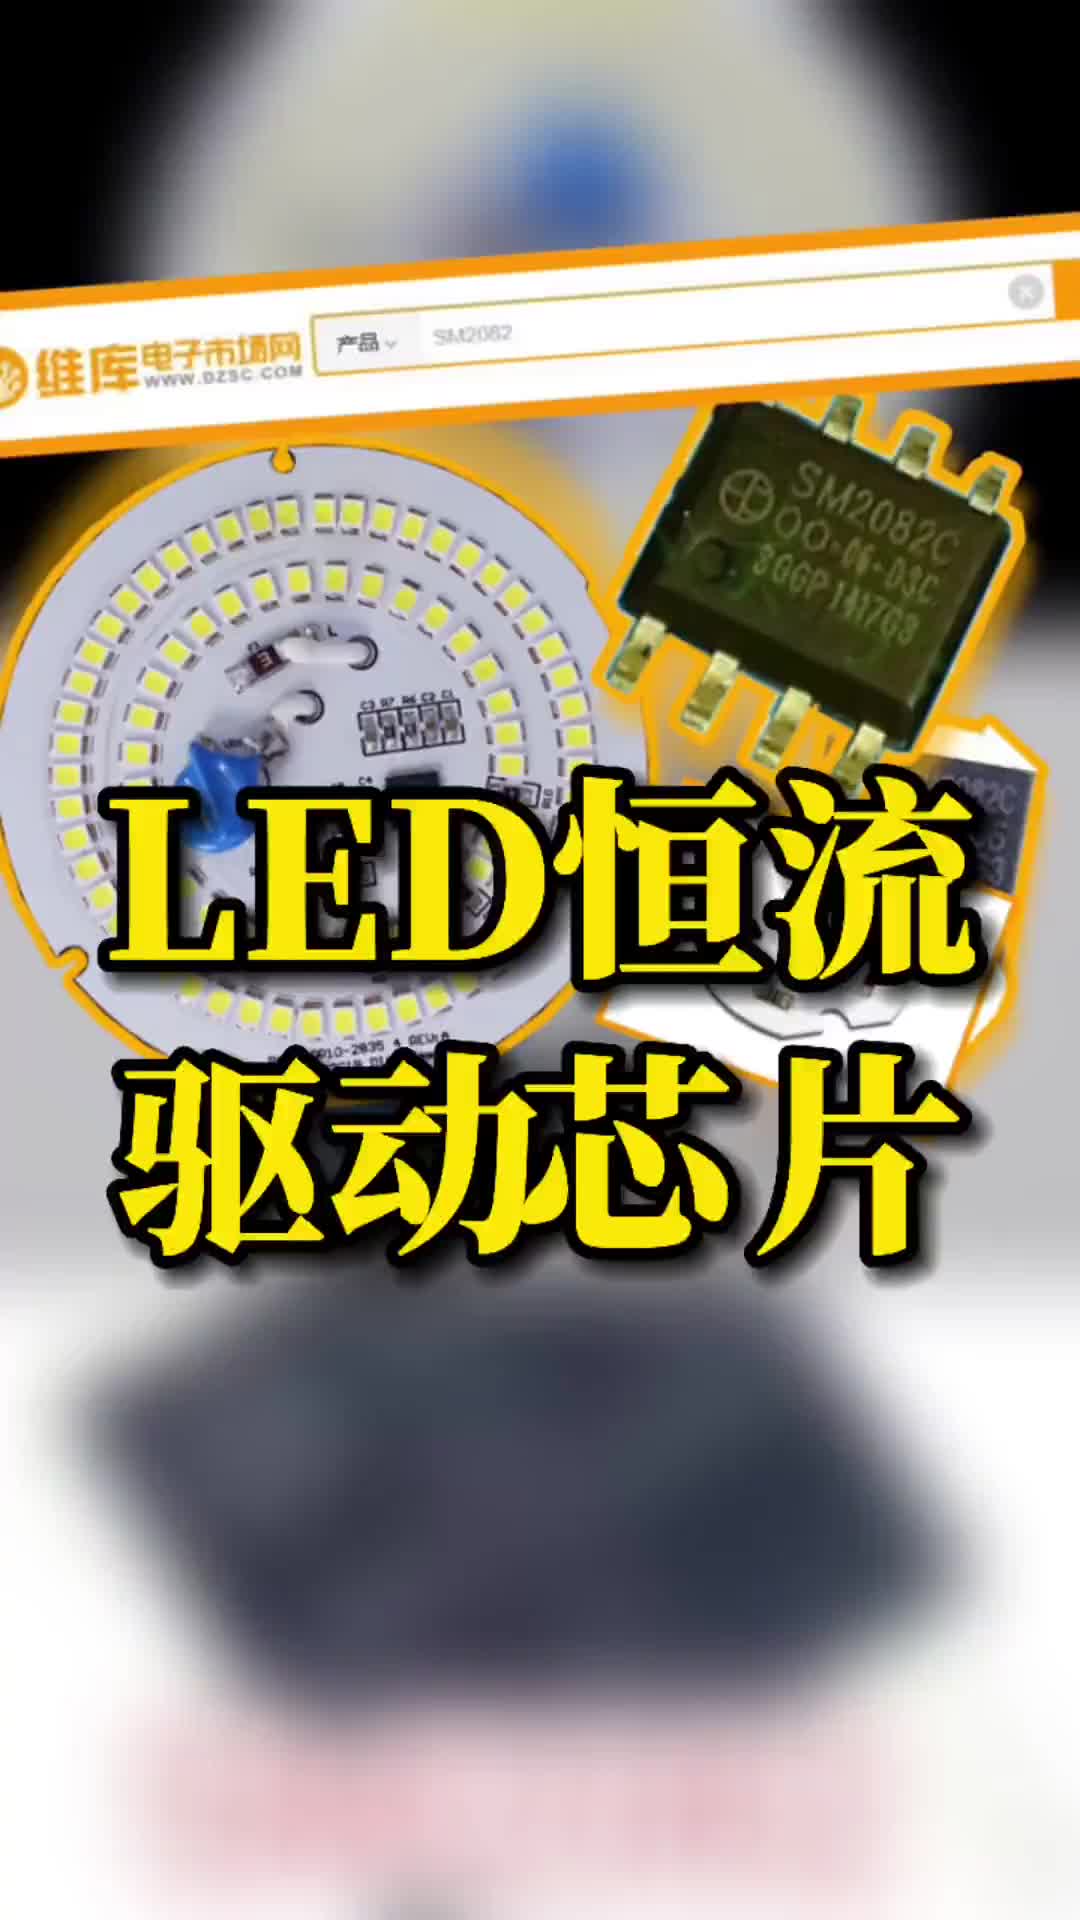 59 国产LED恒流驱动芯片SM2082值得一试！国产LED恒流驱动芯片SM2082值得一试！